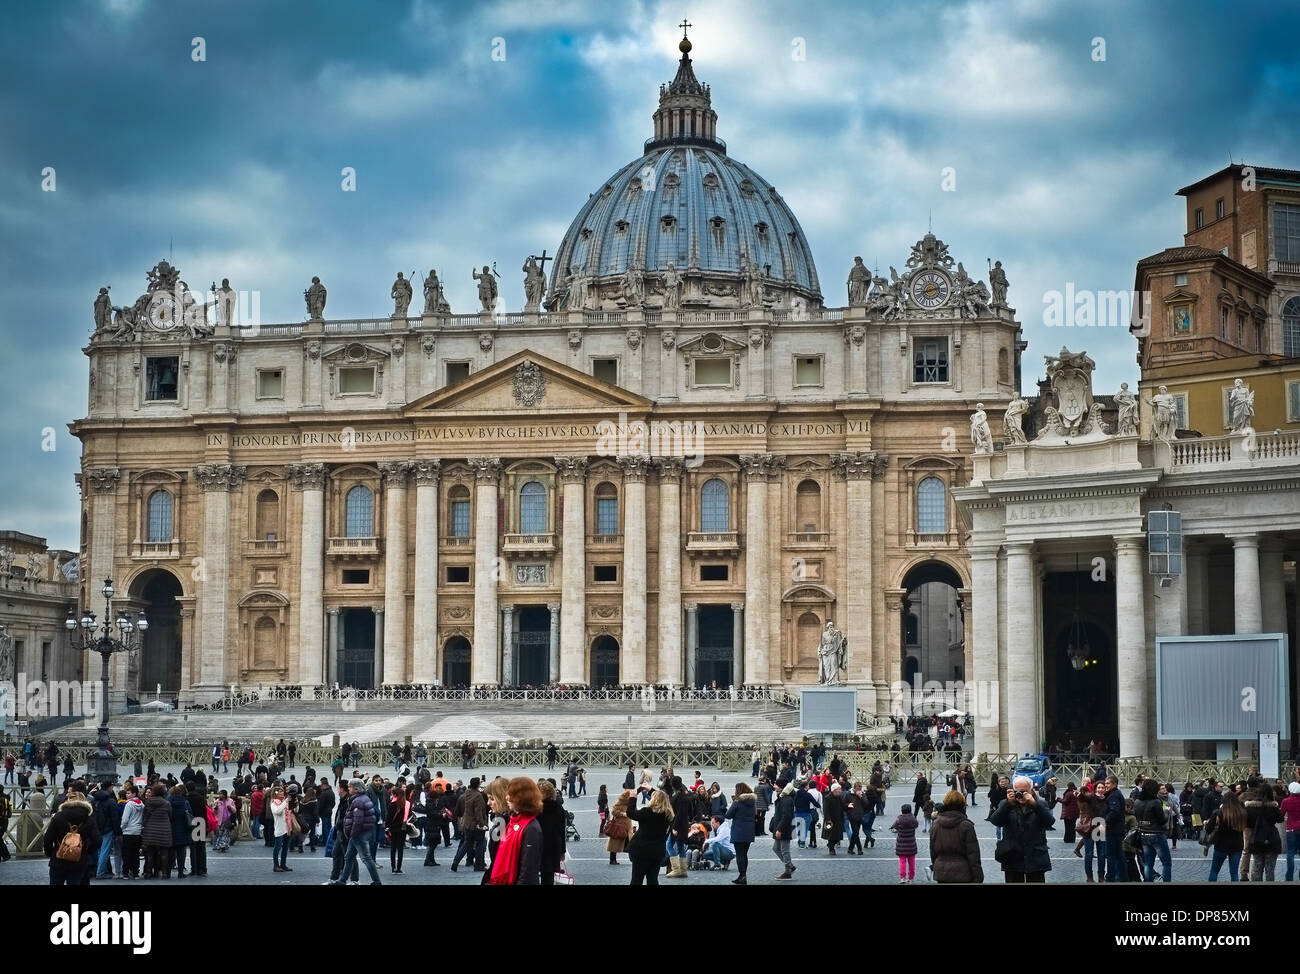 La Basilique Saint-Pierre du Vatican à Rome Italie Banque D'Images